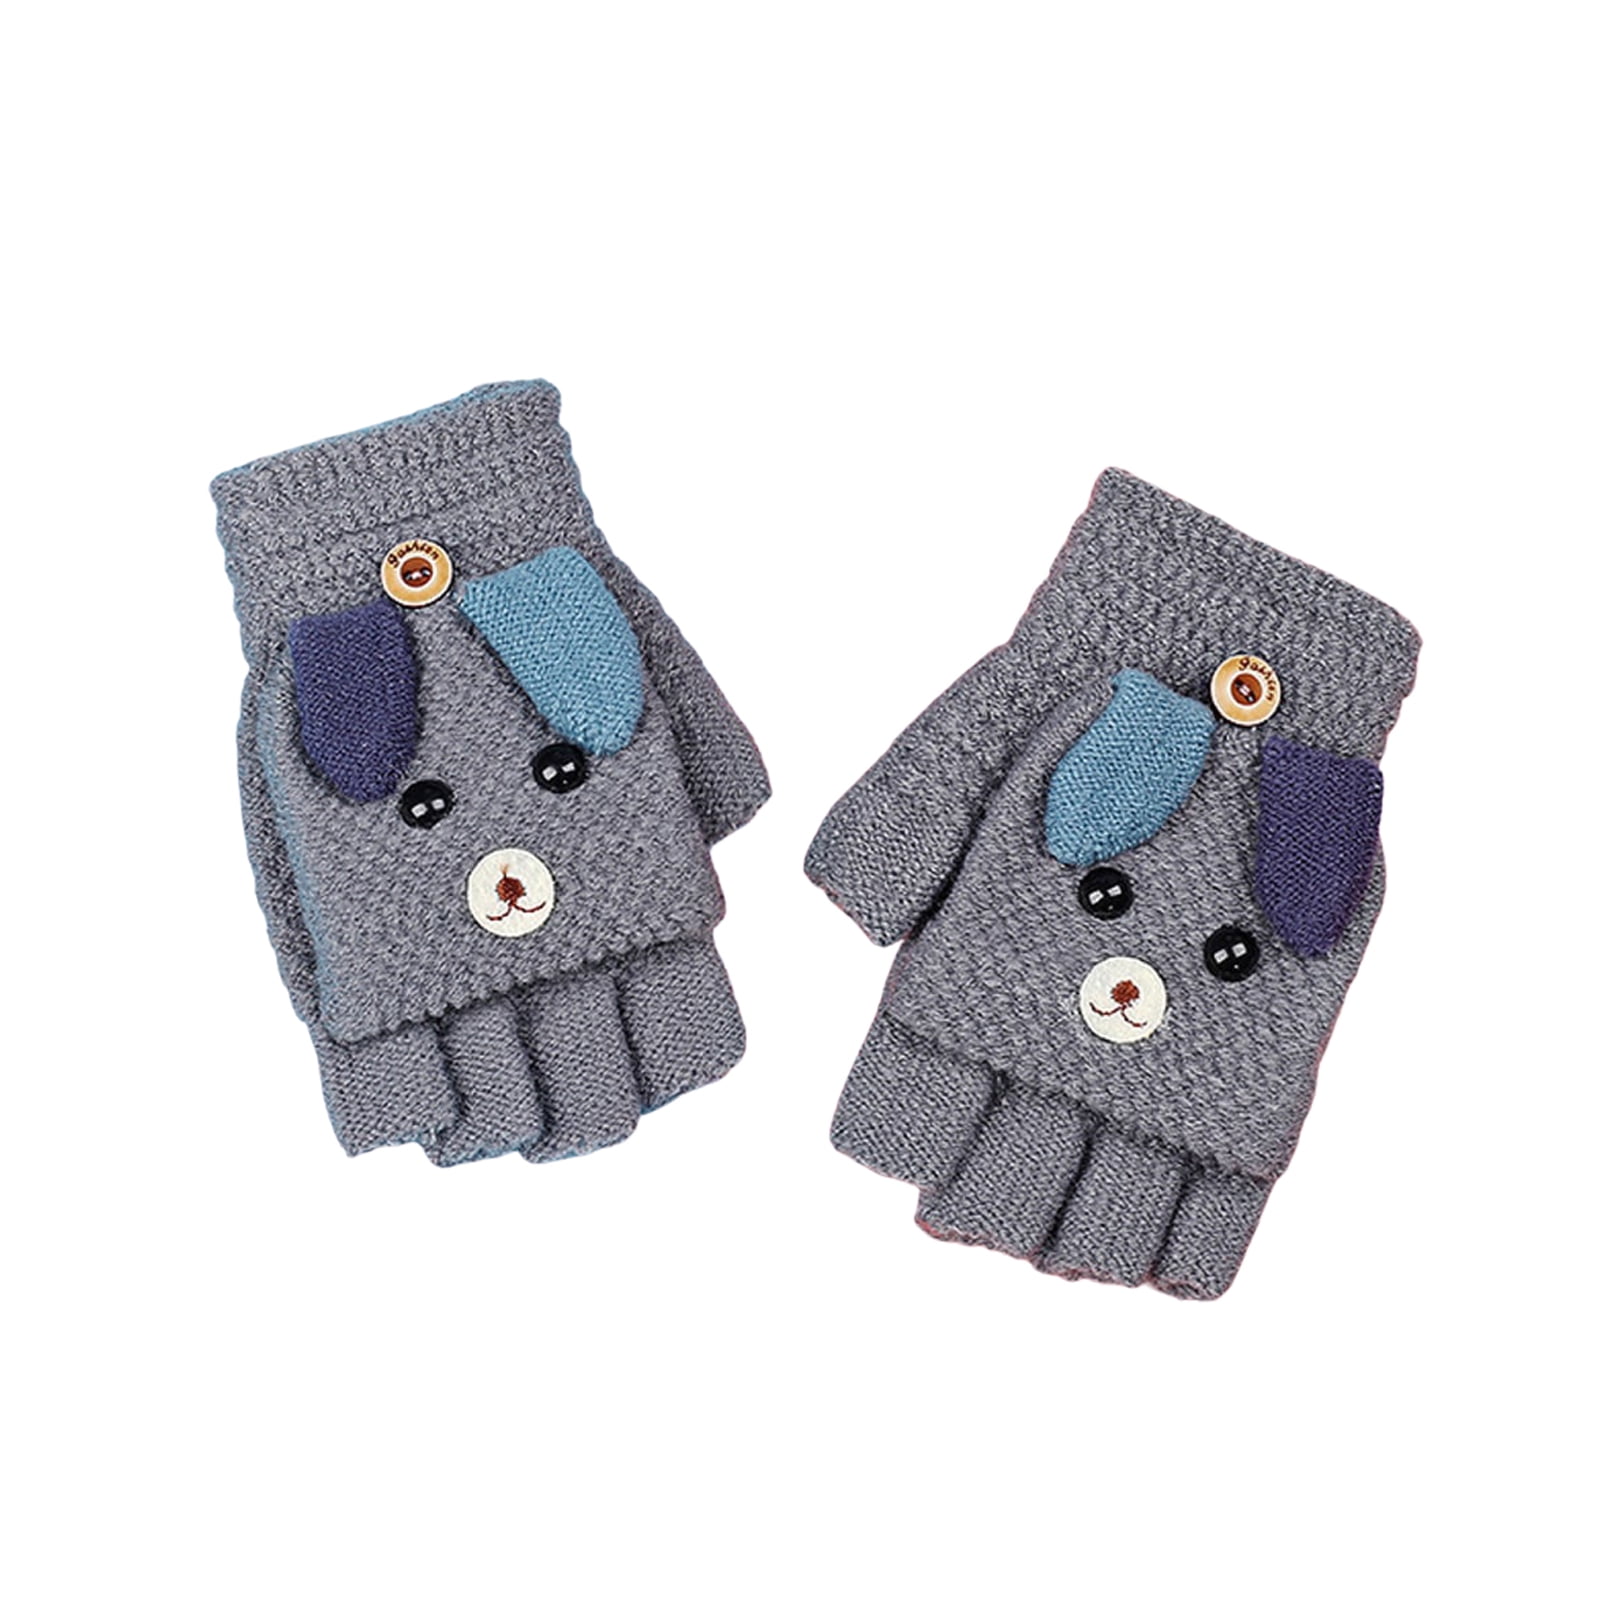 Fingerless Mittens Convertible Flip Top Gloves Children Soft knitted Gloves for Boys Girls 